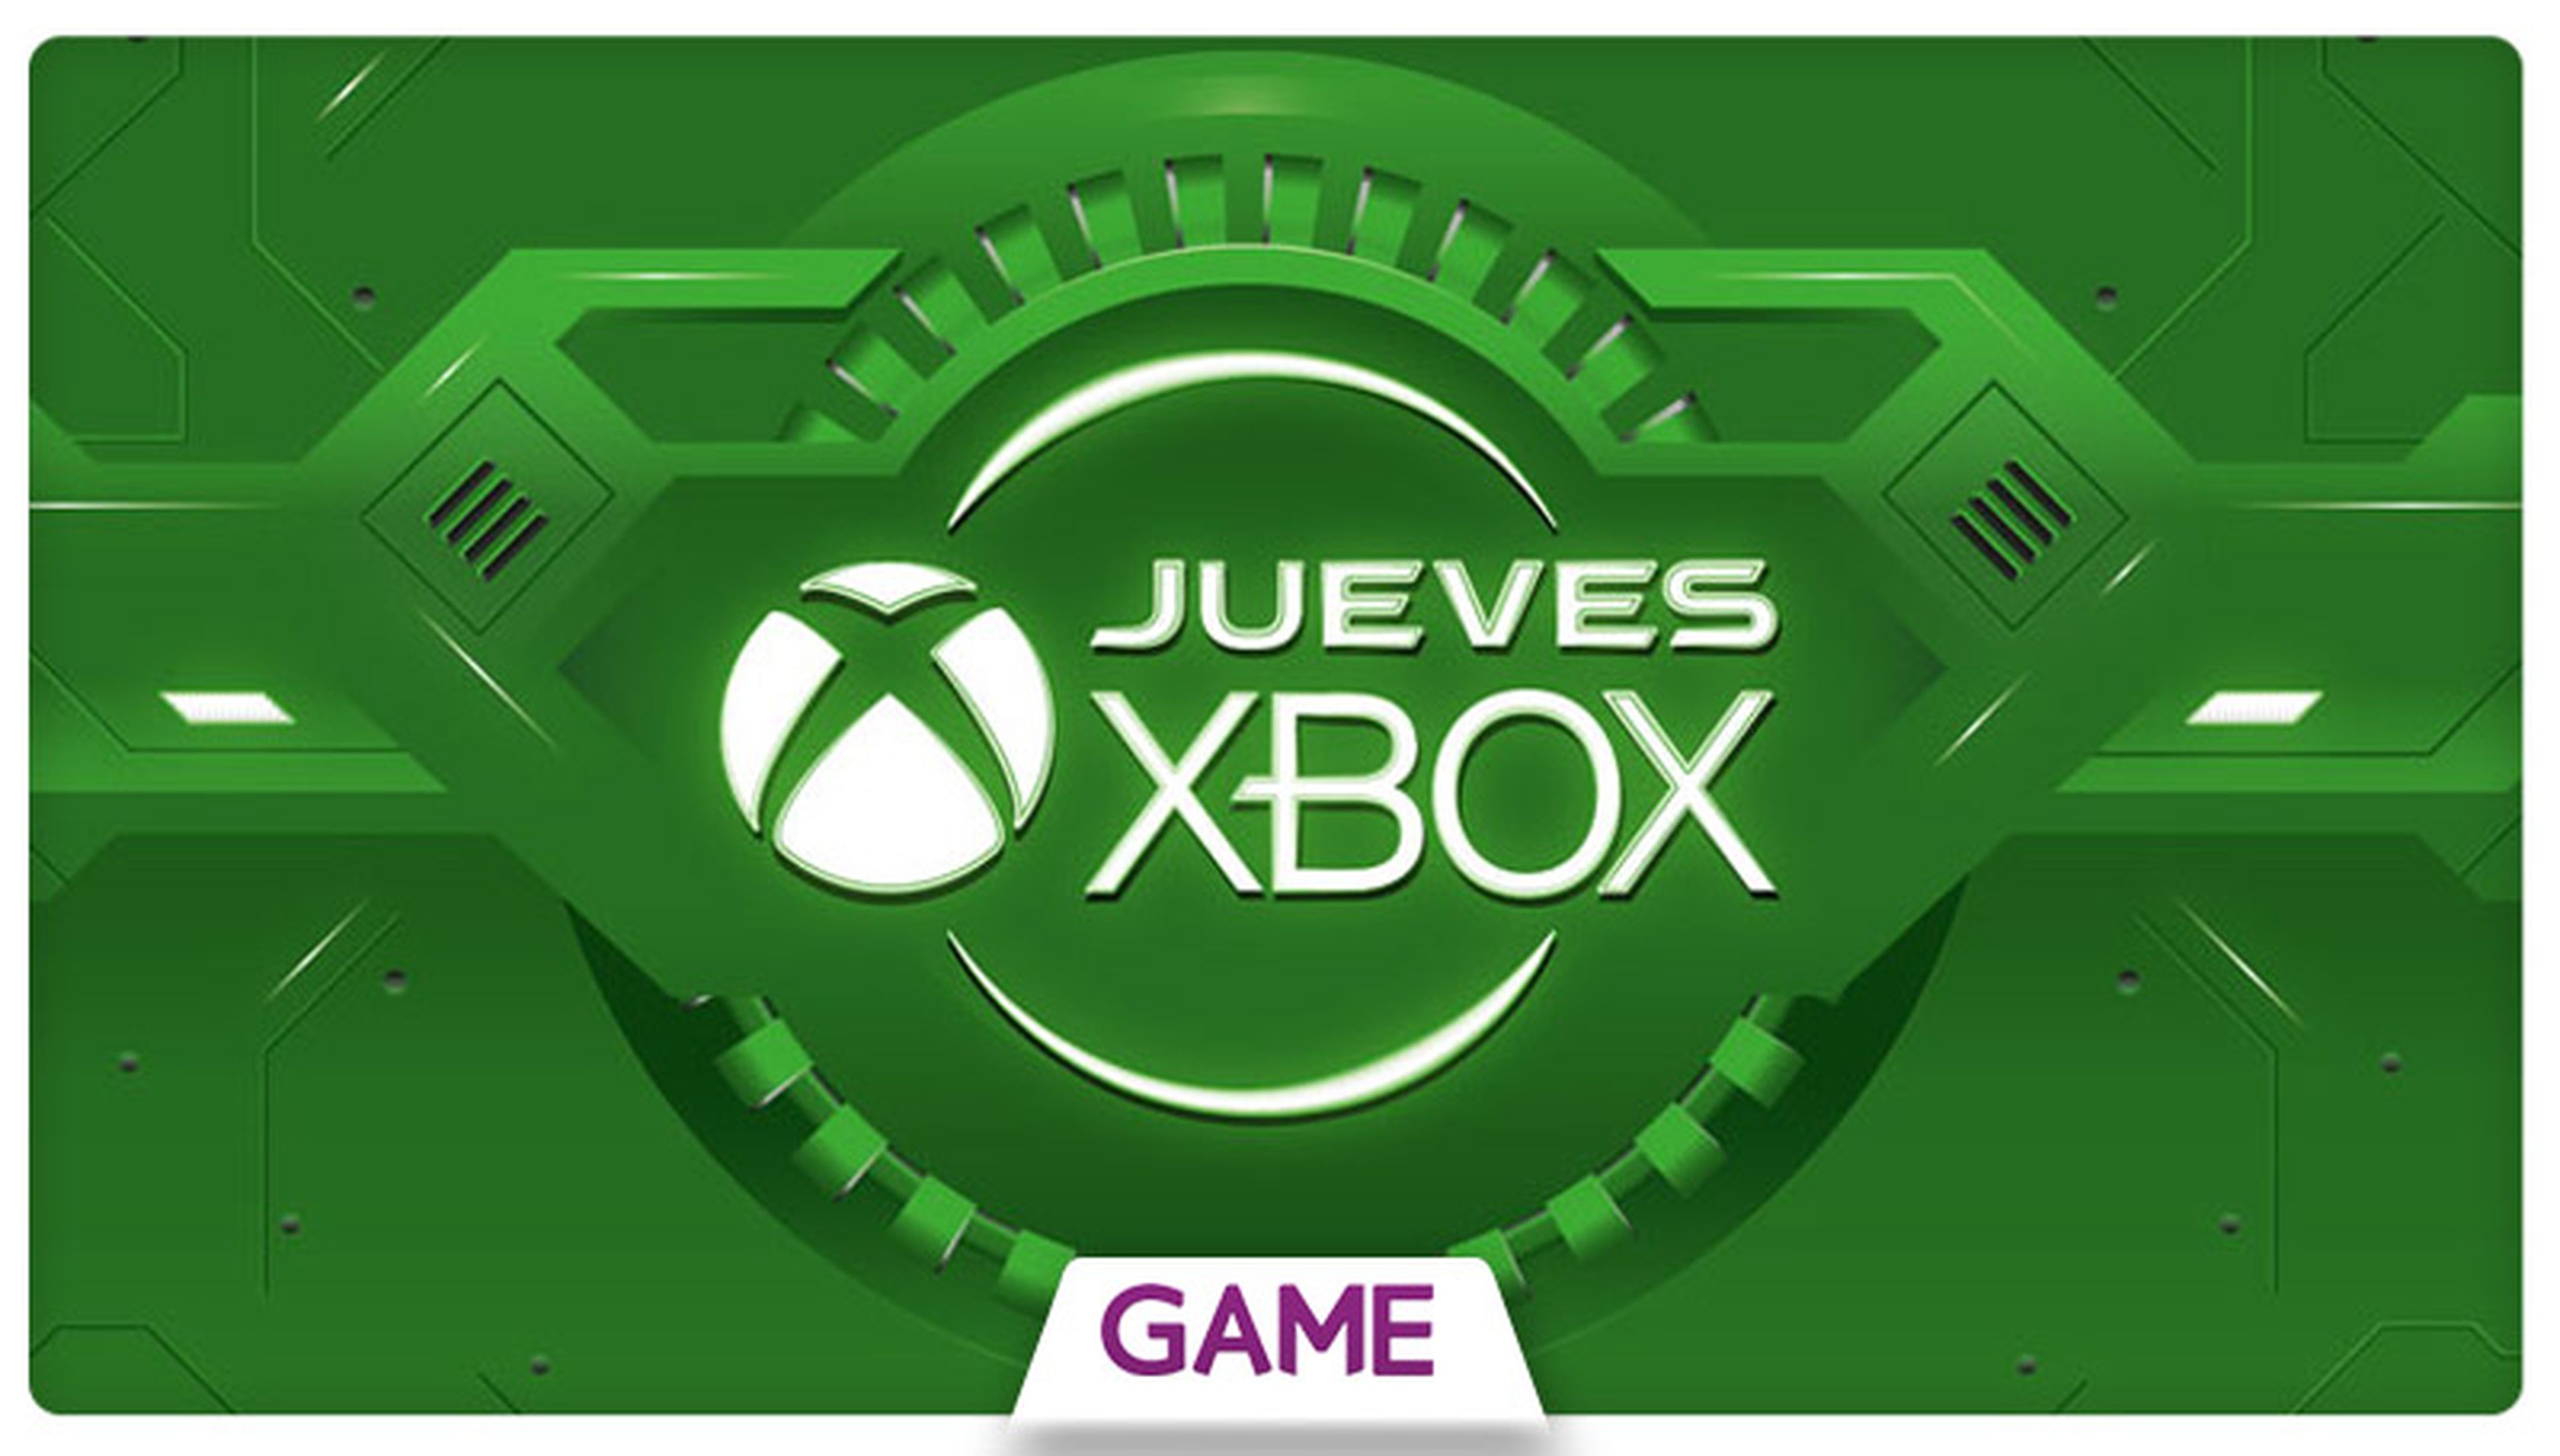 Jueves Xbox en GAME: Décima semana de ofertas